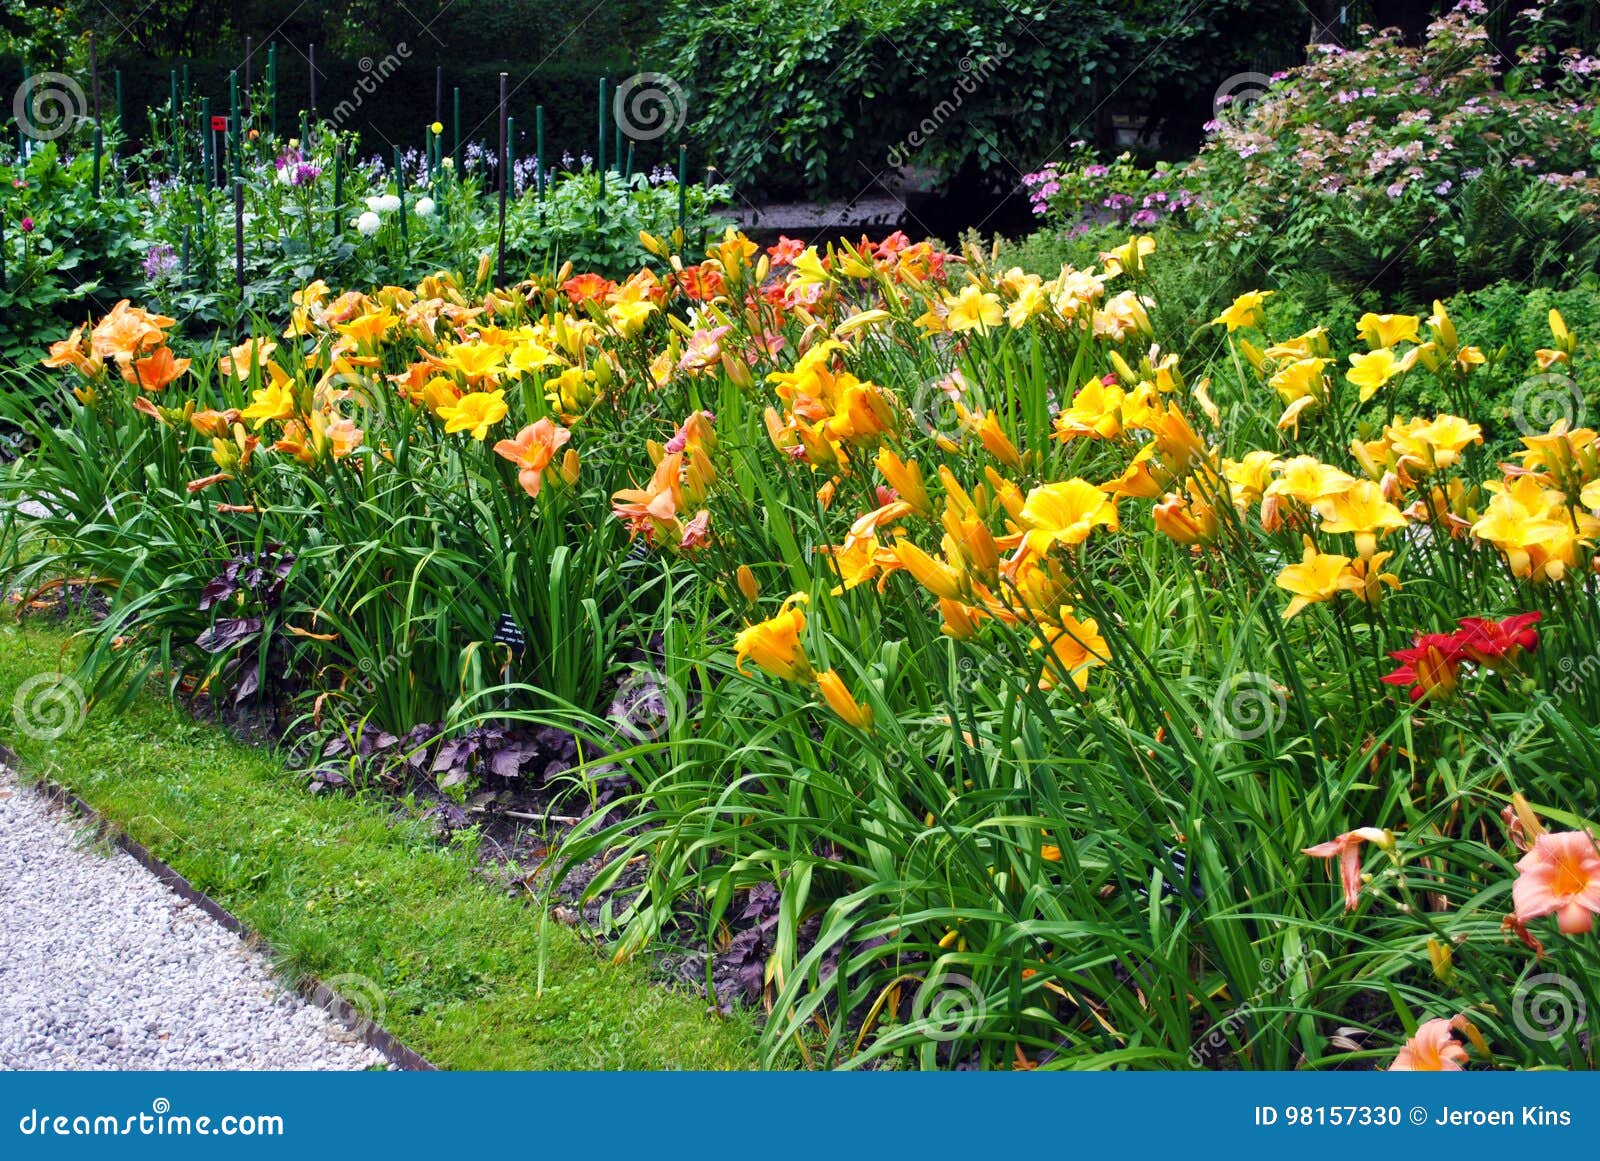 yellow daylily flowers